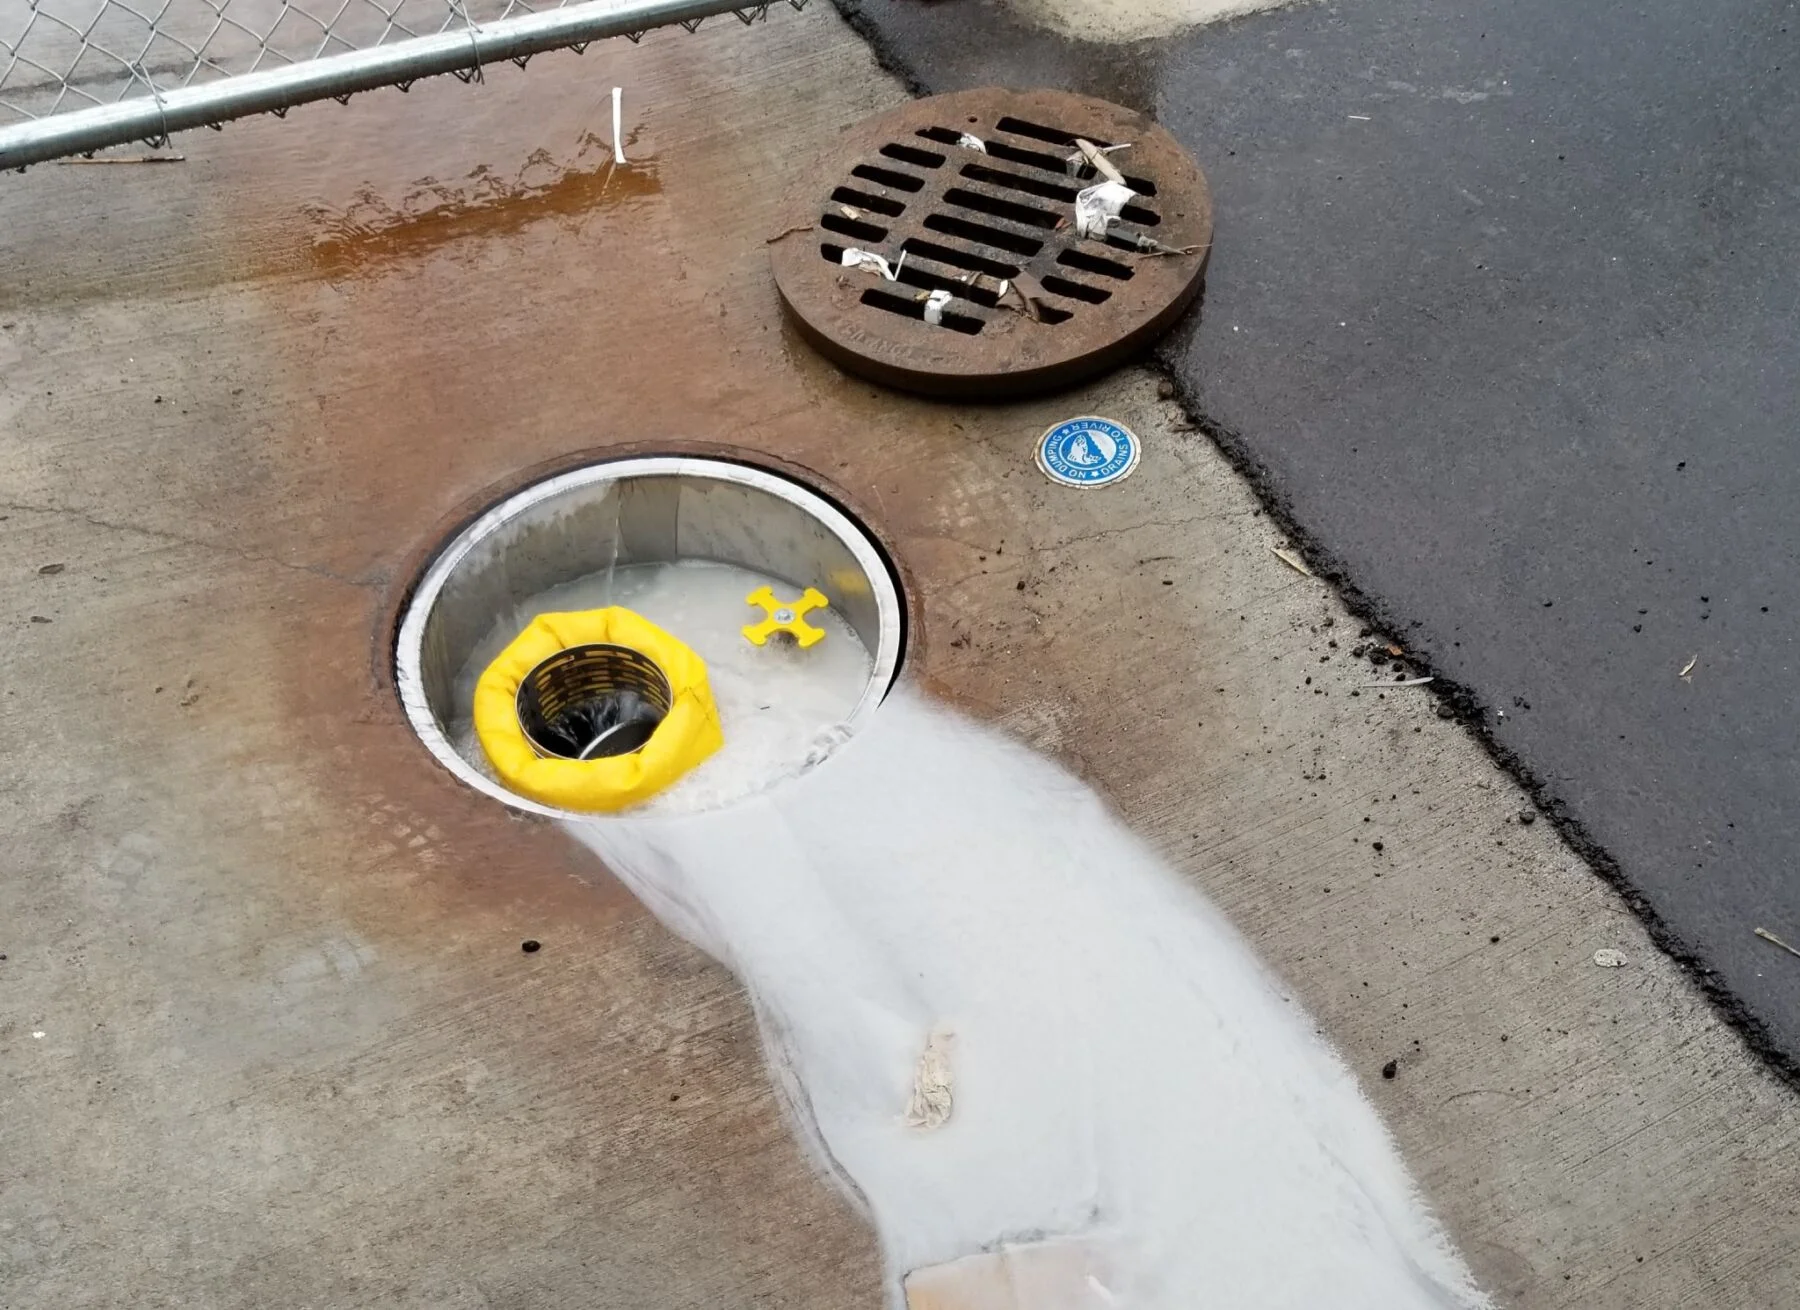 Storm drain spill prevention